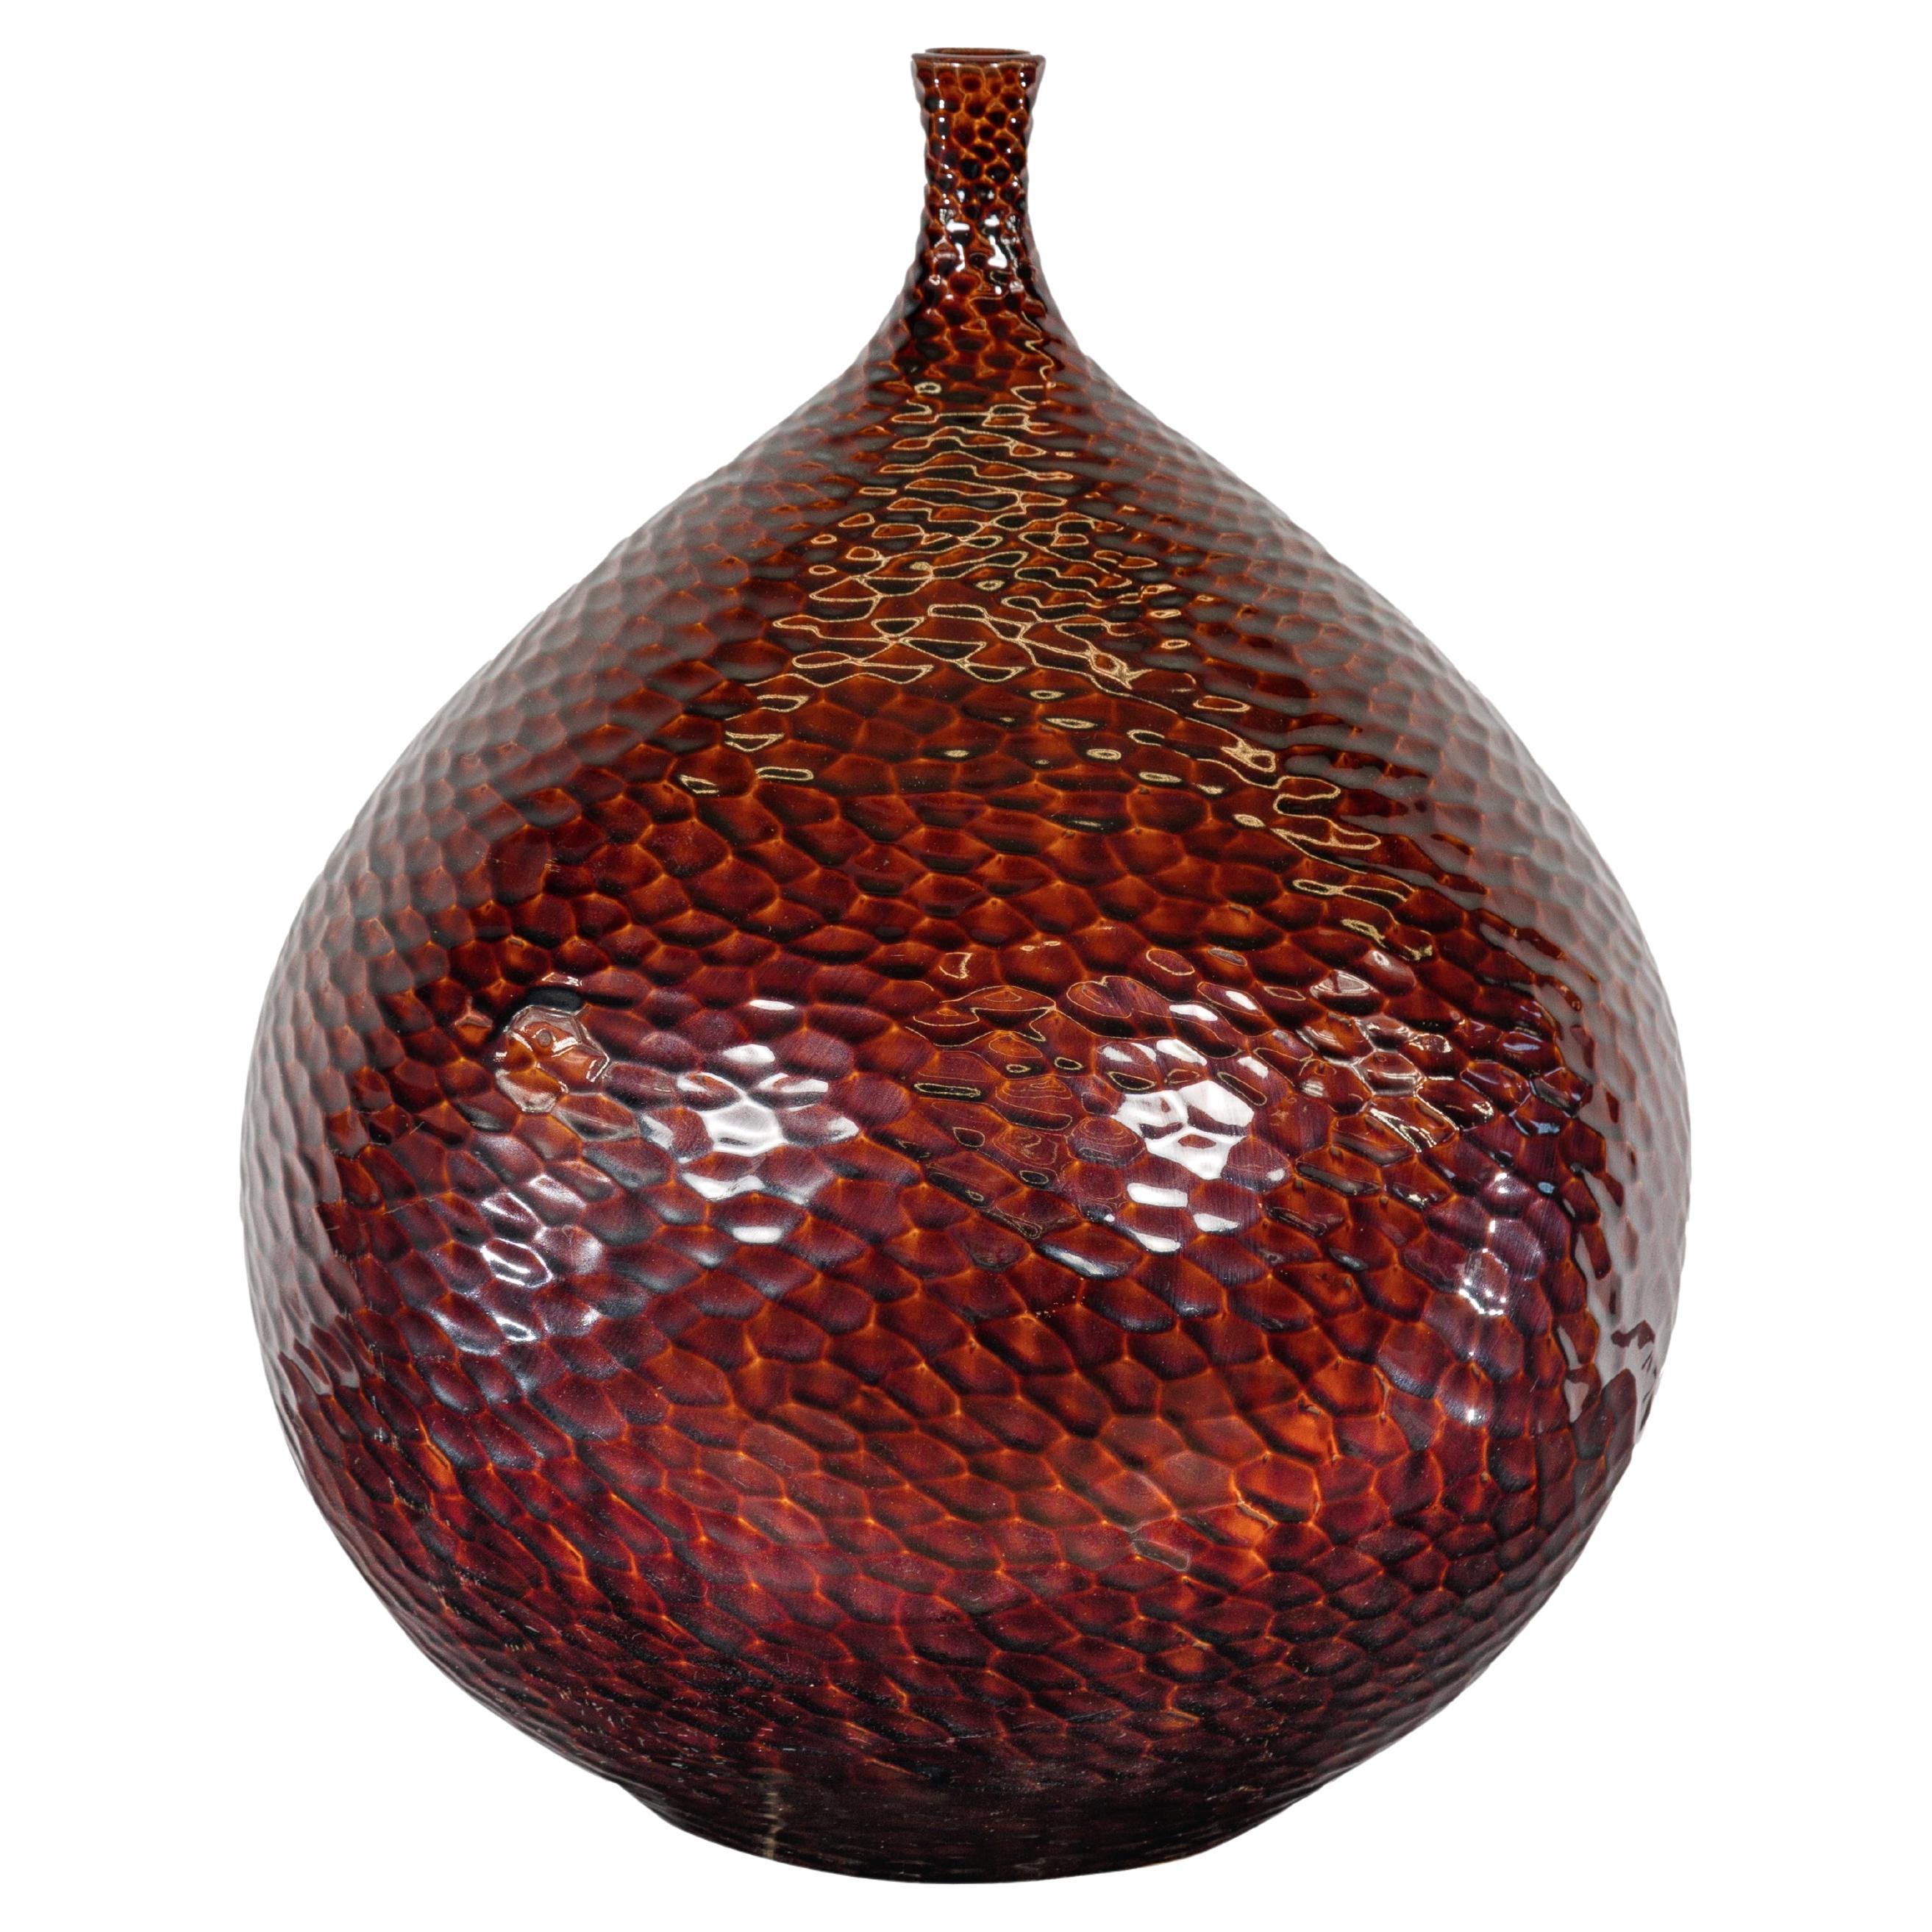 Handgefertigte burgunderrote Vase in Glühbirnenform mit strukturierten honigfarbenen Motiven im Stil